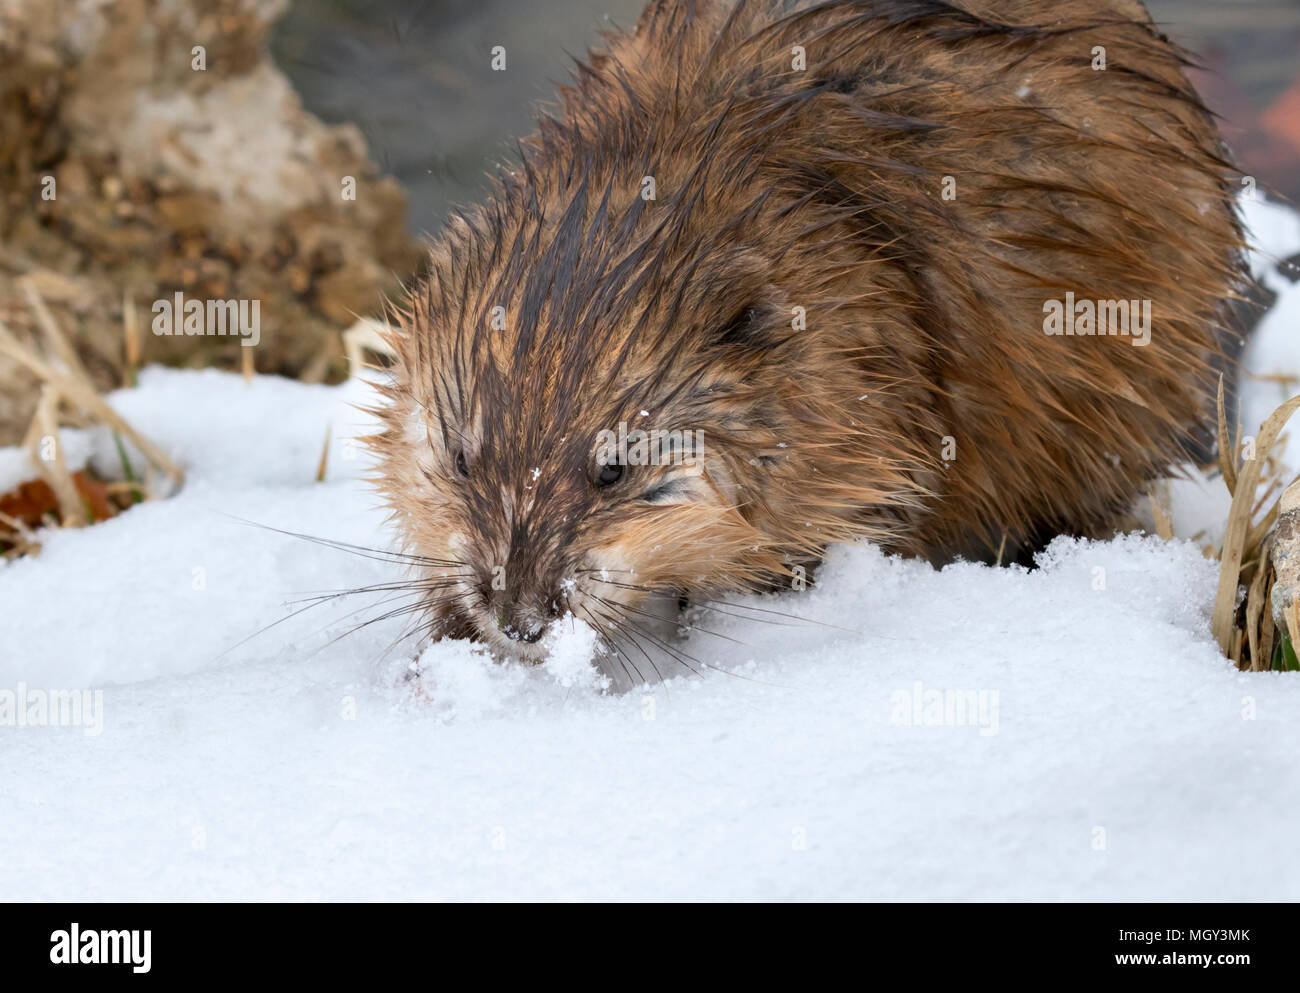 Rata almizclera (Ondatra zibethicus) buscando hierba bajo la nieve al borde del lago, Ames, Iowa, EE.UU. Foto de stock